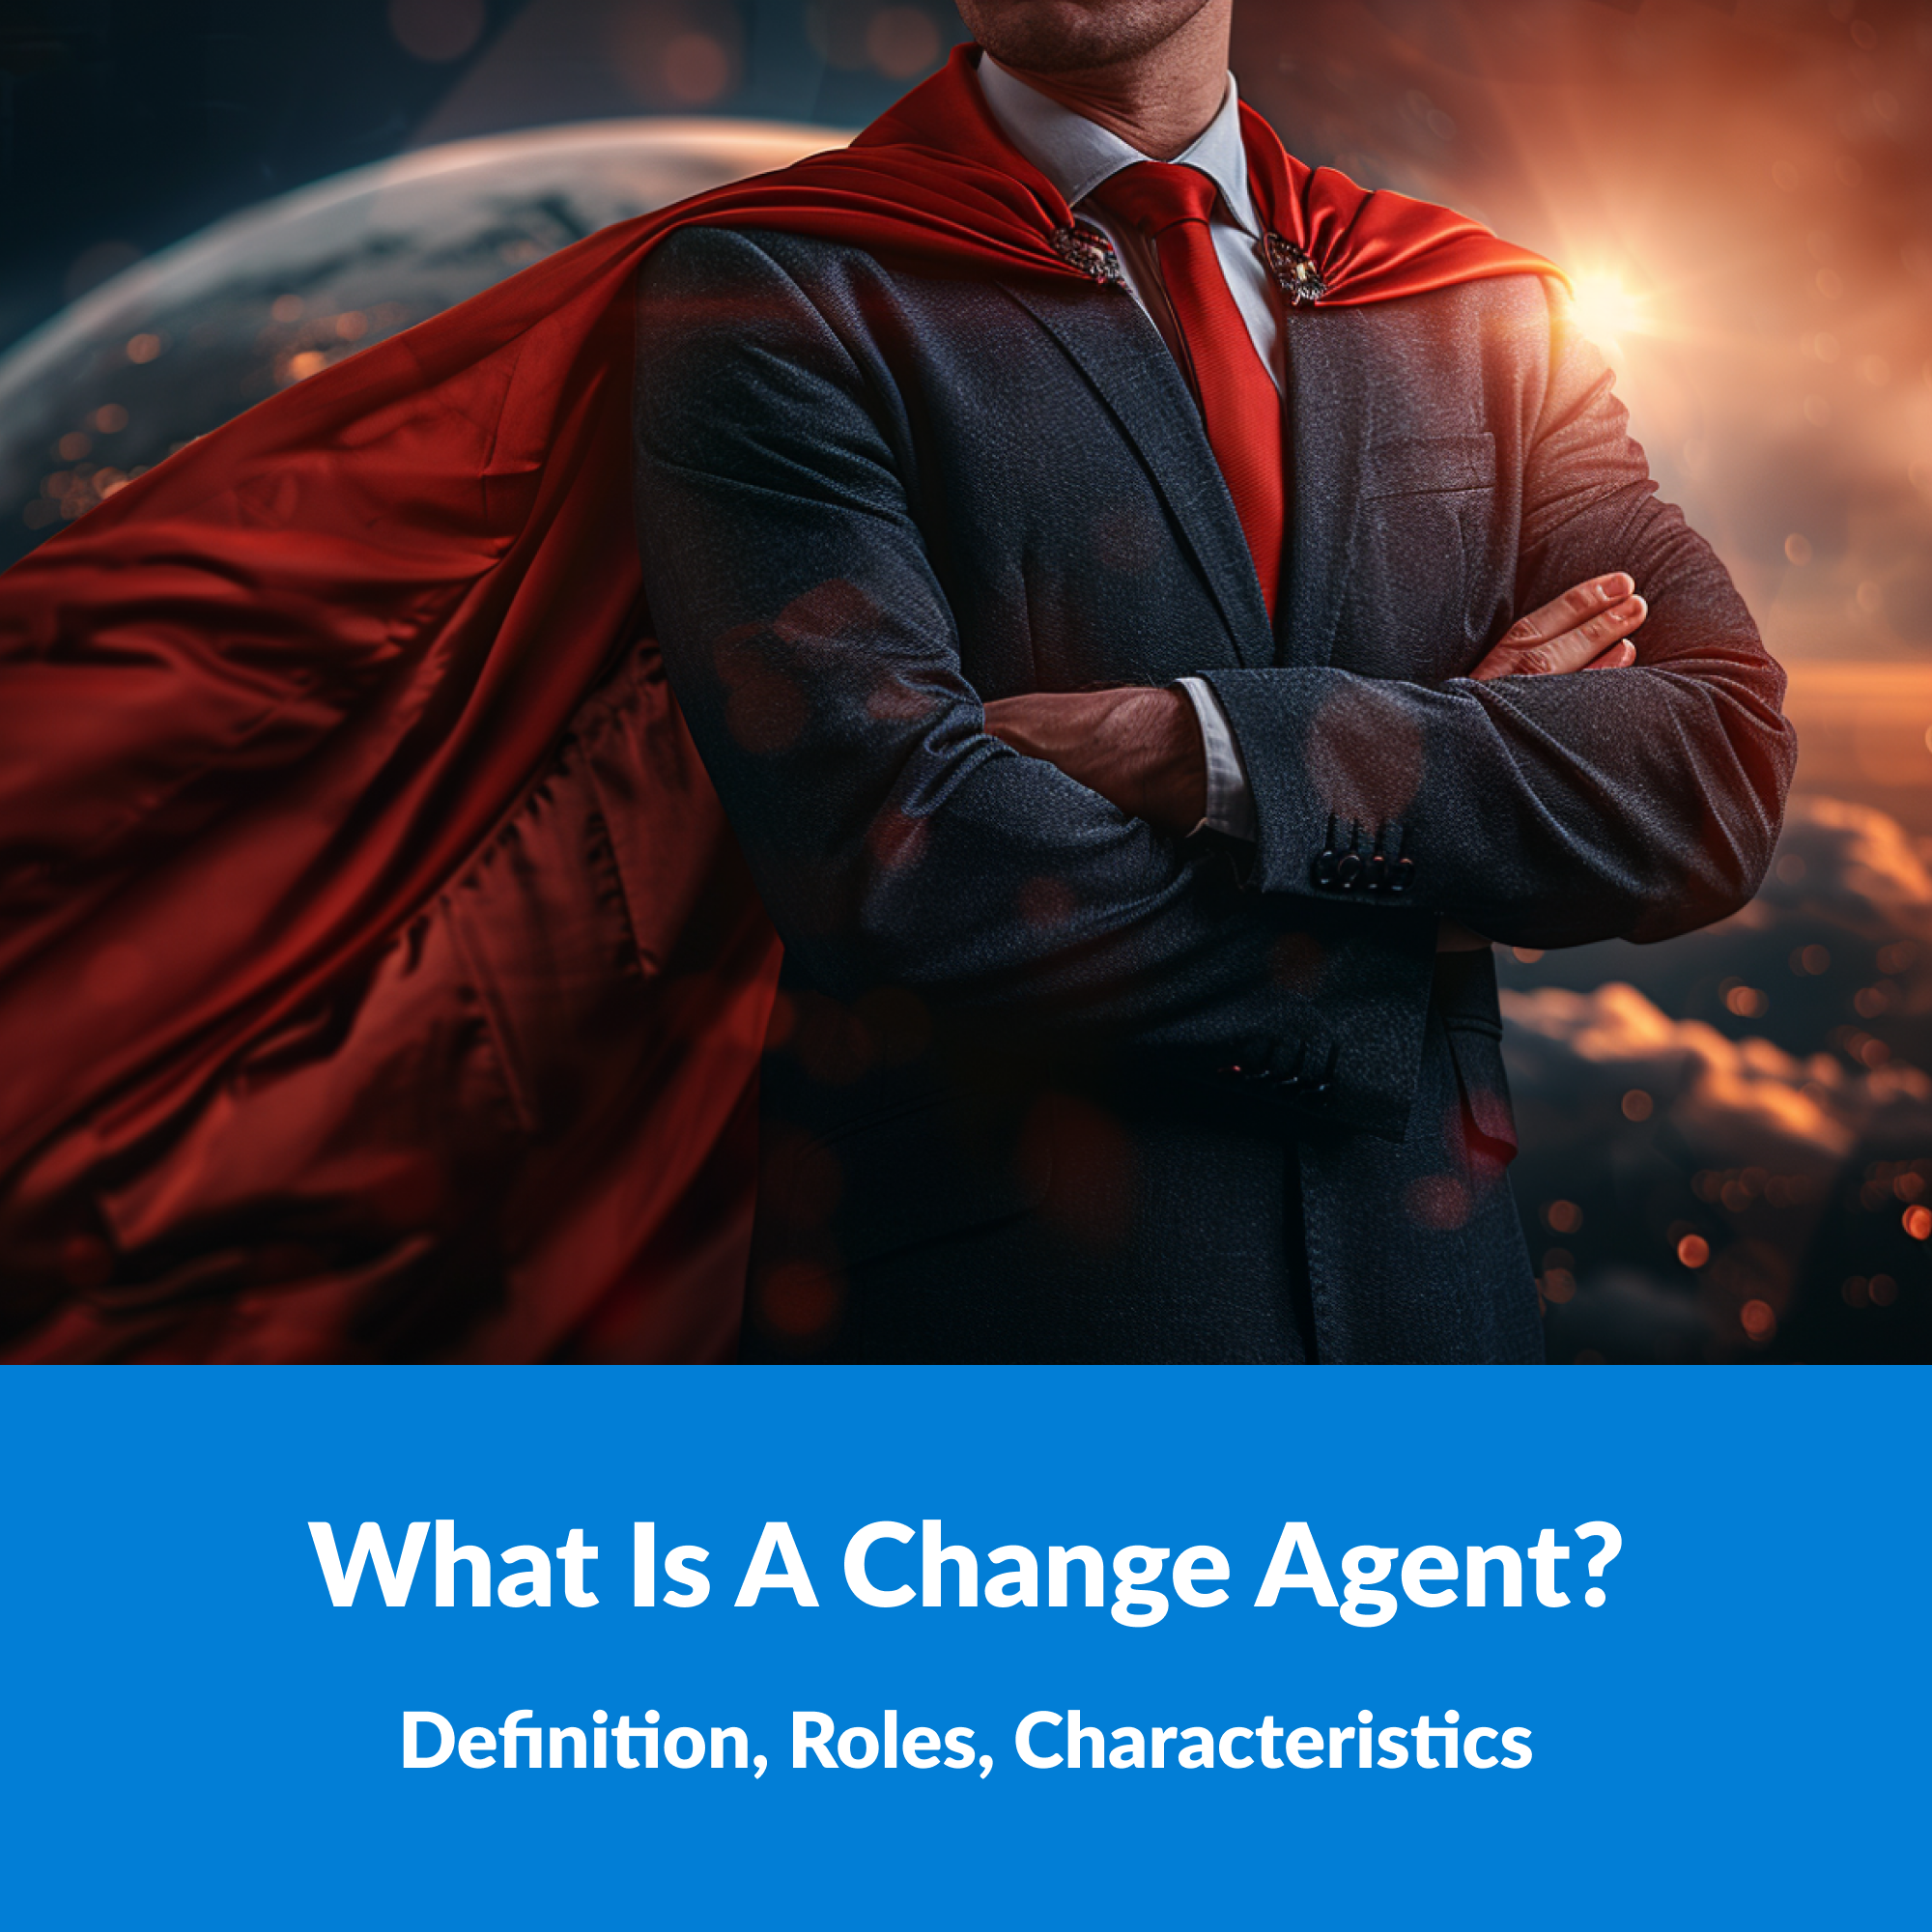 change agent